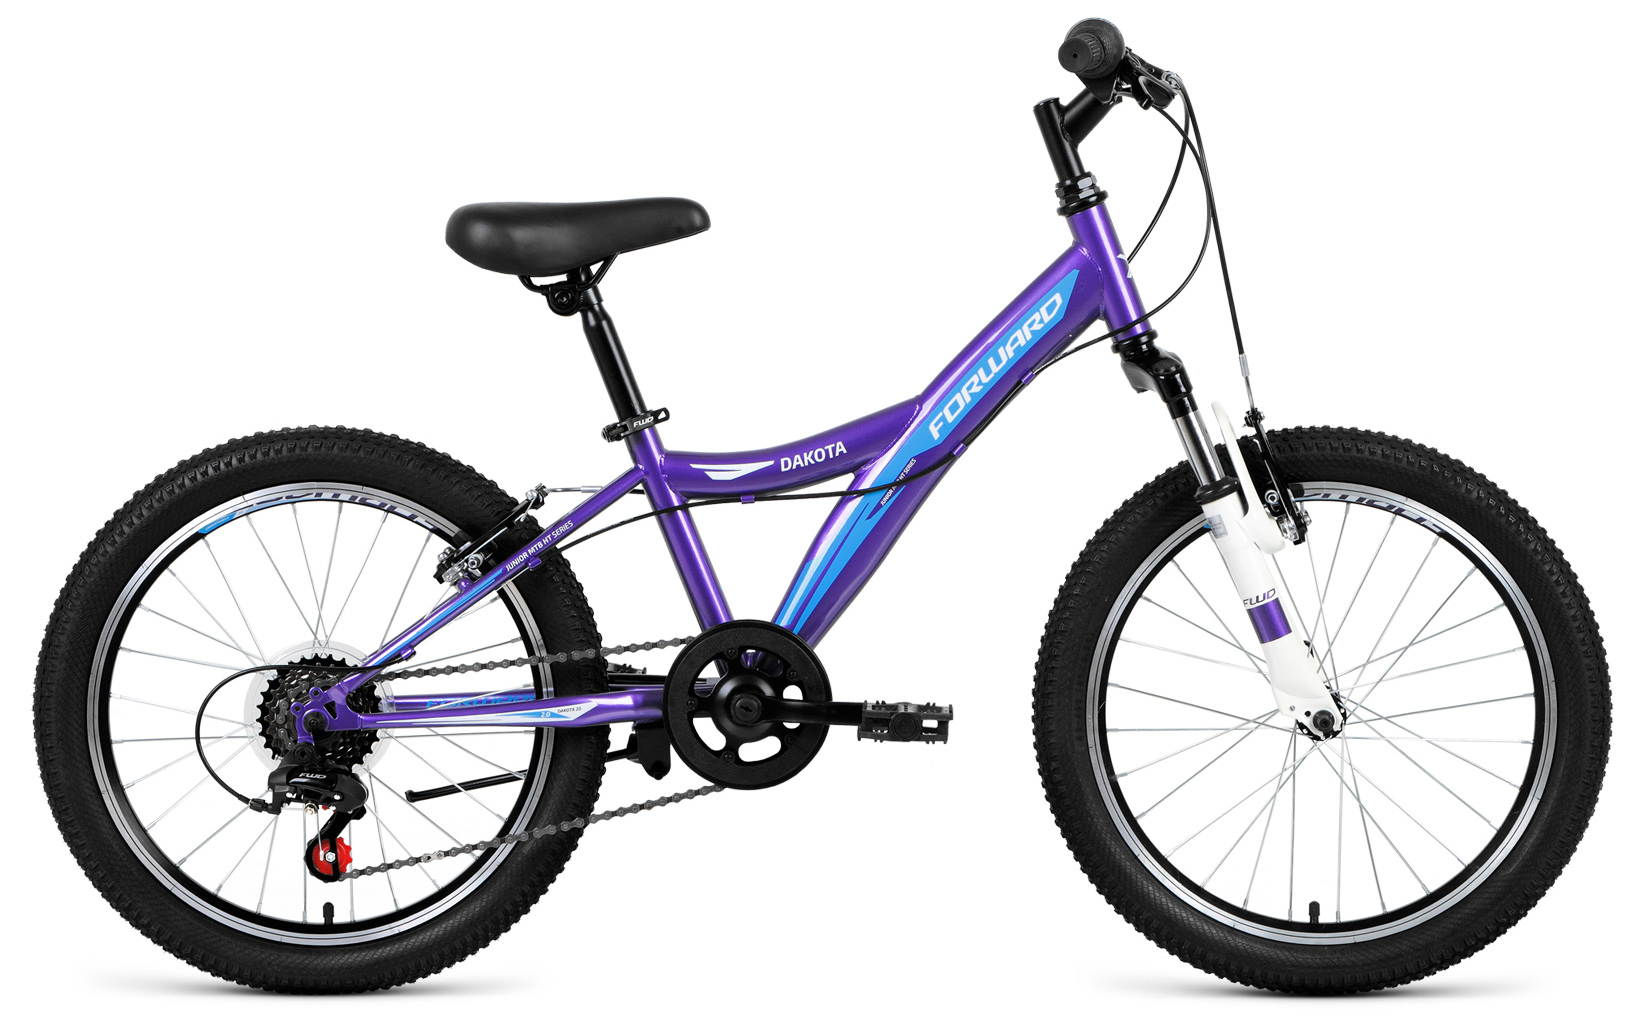  Отзывы о Детском велосипеде Forward Dakota 20 2.0 2019